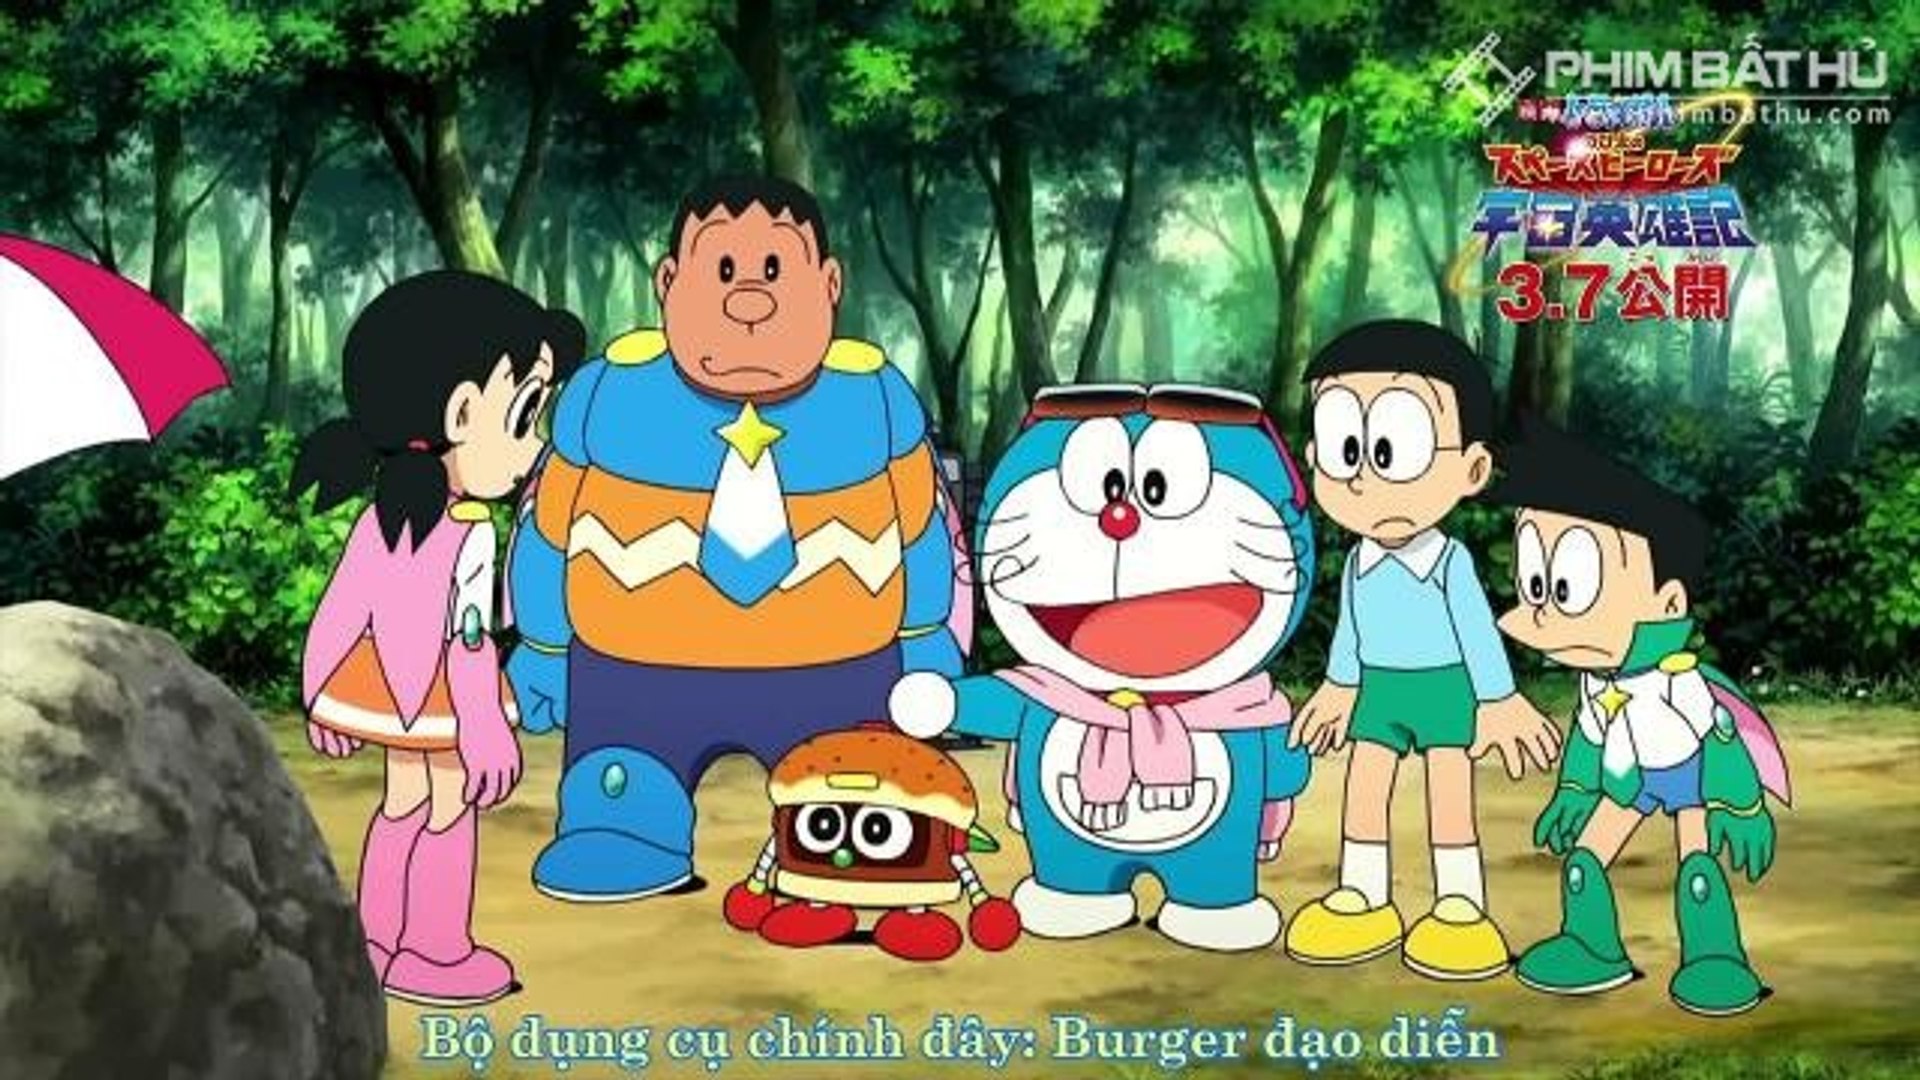 Animation Movies 2016 – Doraemon Movies English Sub Ep1